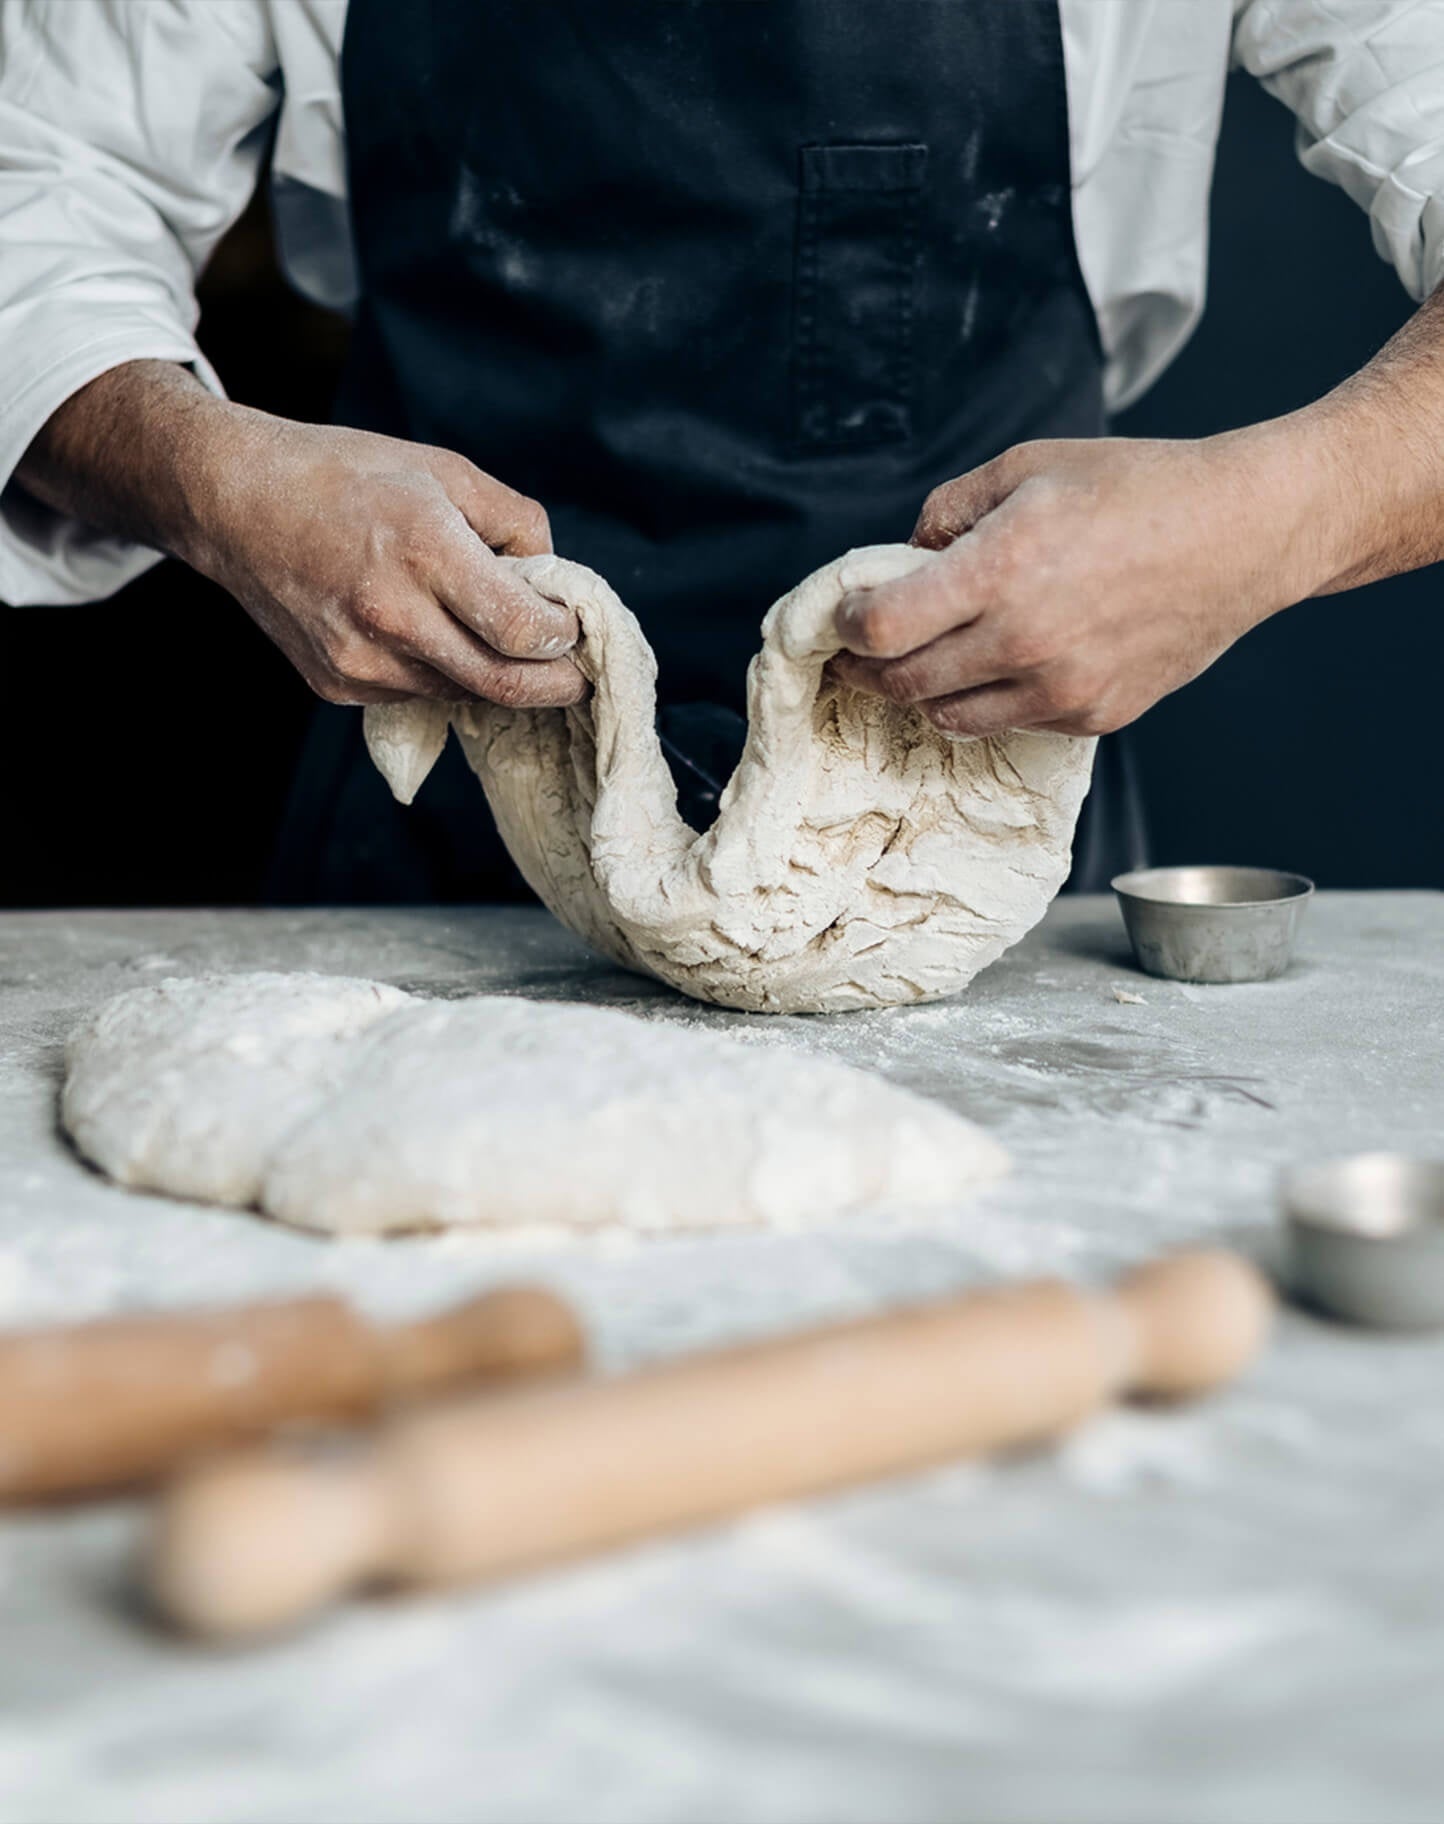 A baker rolls out dough